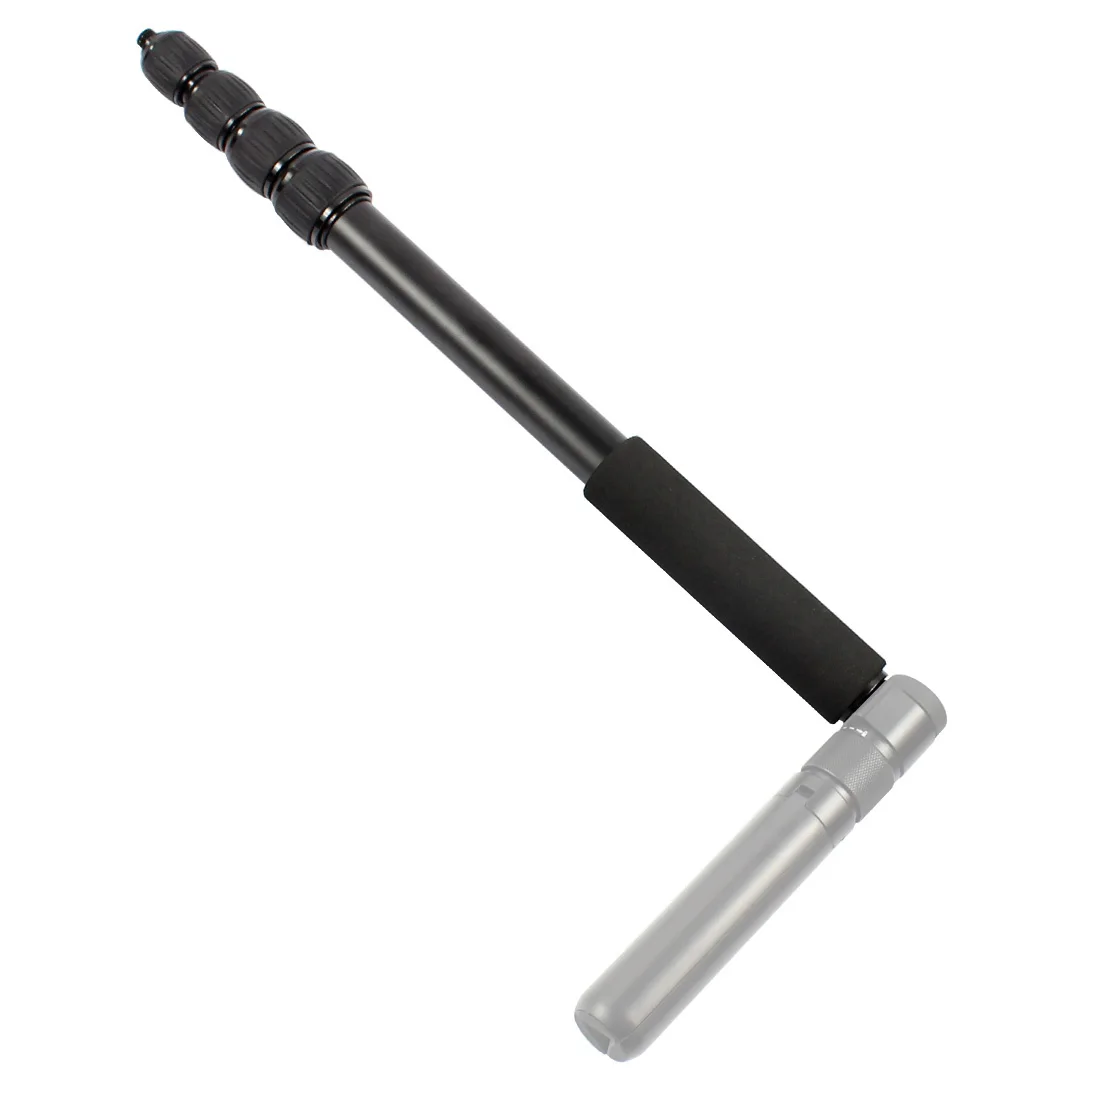 Выдвижной шест палка для селфи+ карманная ручка Штатив для GoPro Hero 7/Insta360 ONE X Xiaomi Yi 4K+ EKEN SJCAM ручной монопод